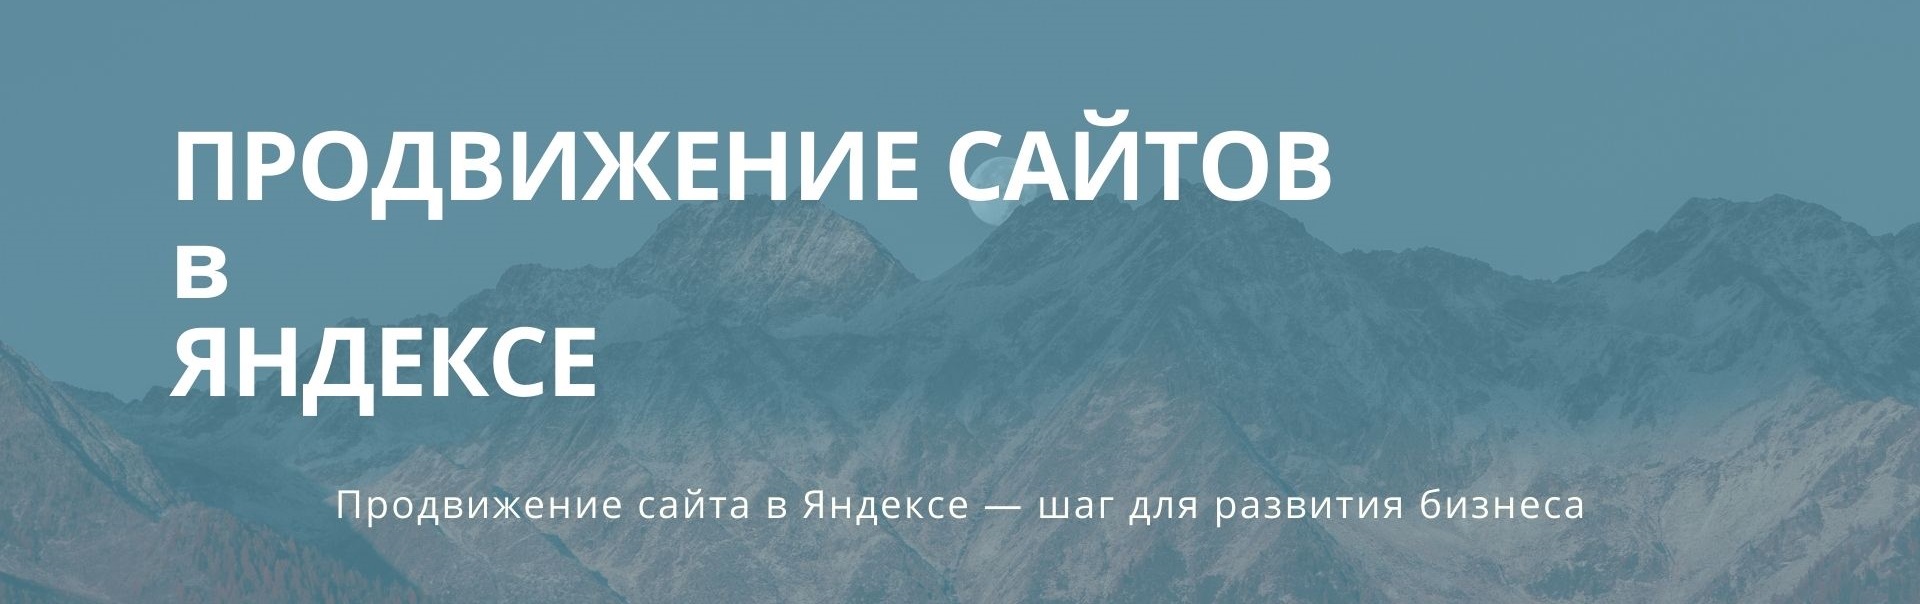 продвижение сайта в Яндексе 